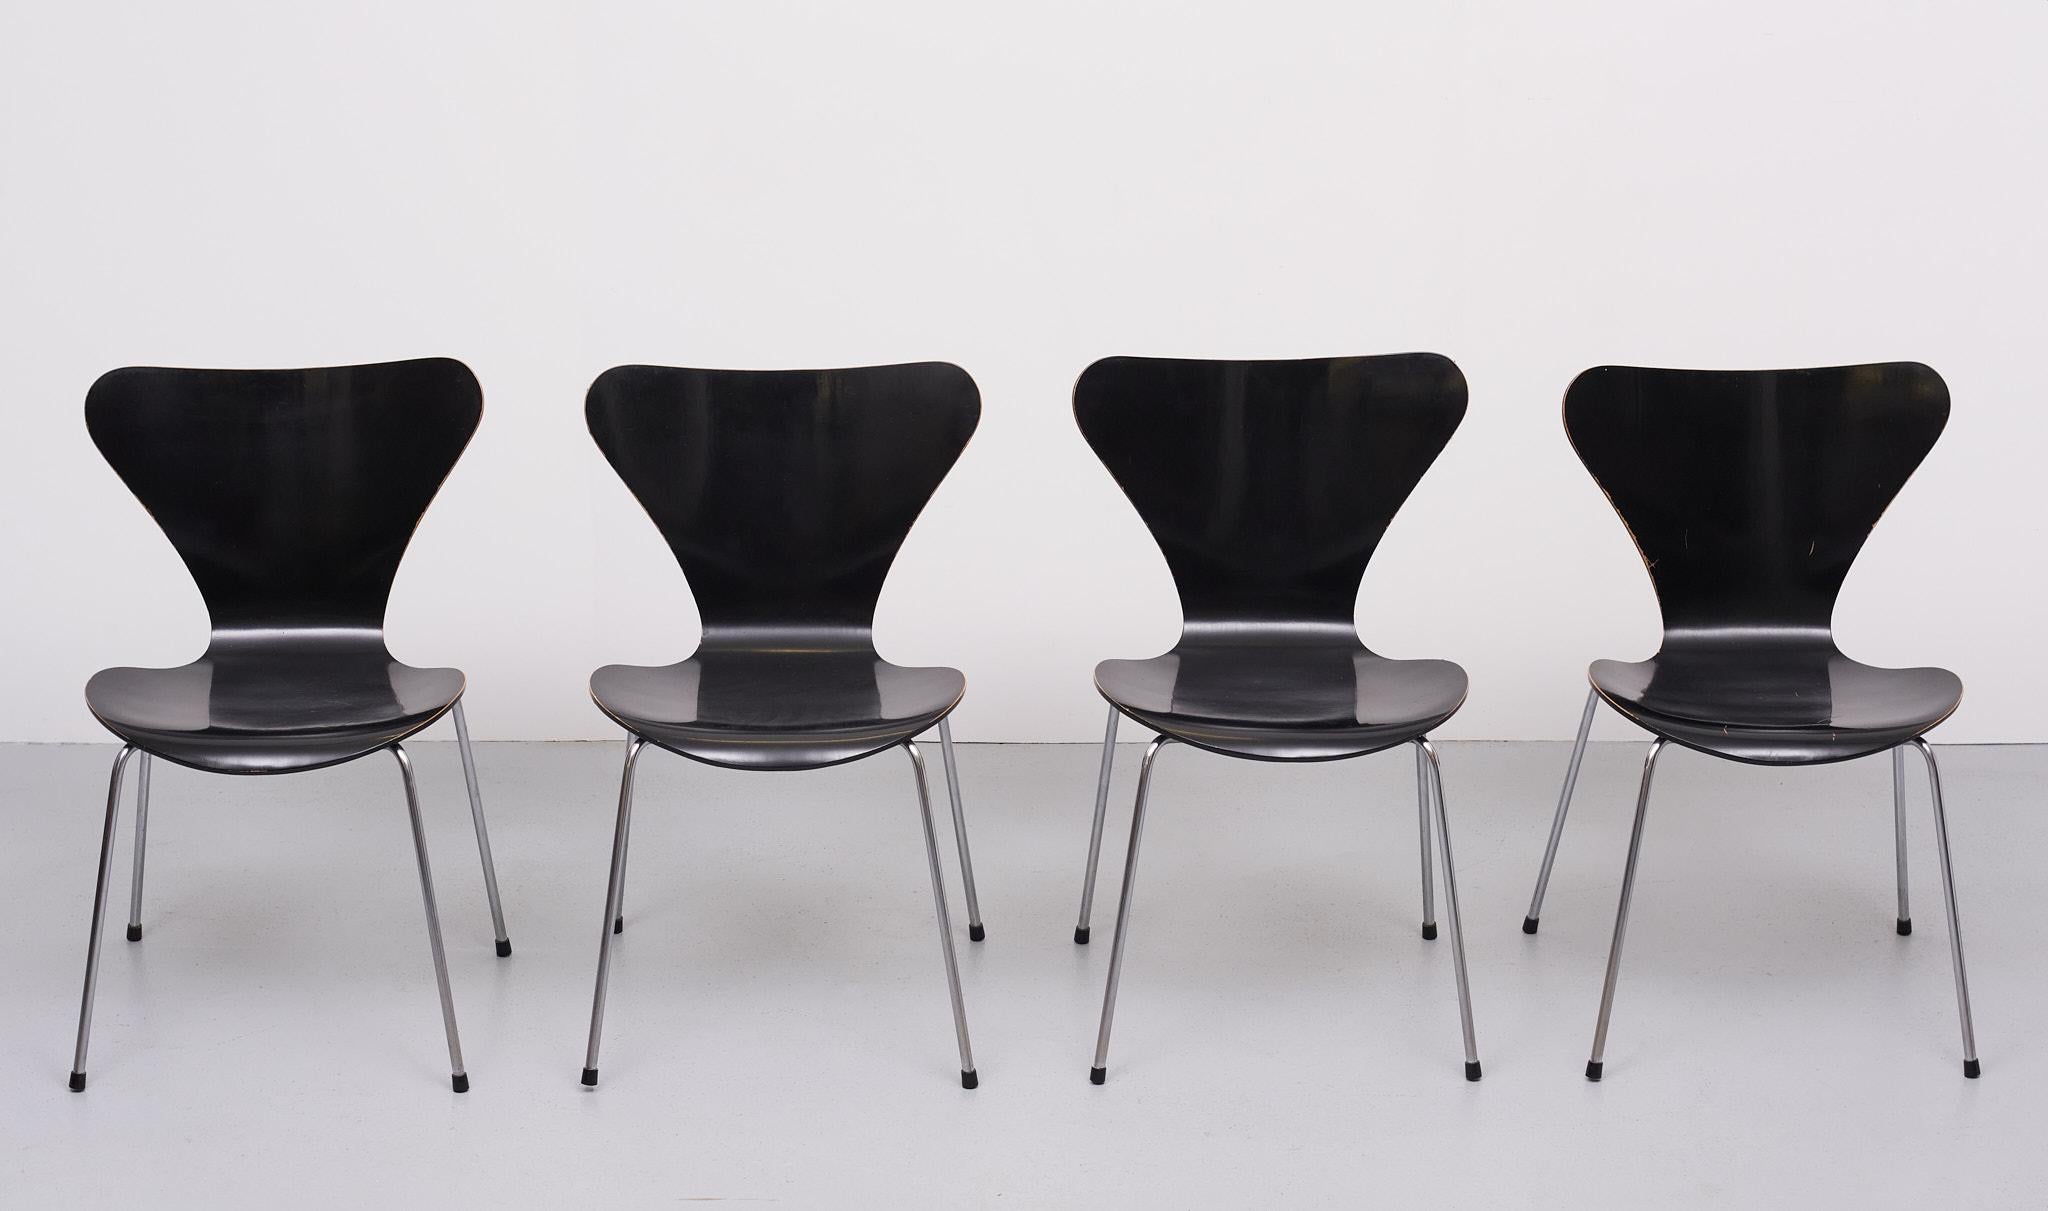 Schönes Set von mattschwarzen Schmetterlingsstühlen (Butterfly Chairs) oder Serie 7 / 3107 von Arne Jacobsen für Fritz Hansen. Das Set ist in sehr gepflegtem Vintage-Zustand. 
Mit genau dem richtigen Maß an Patina.